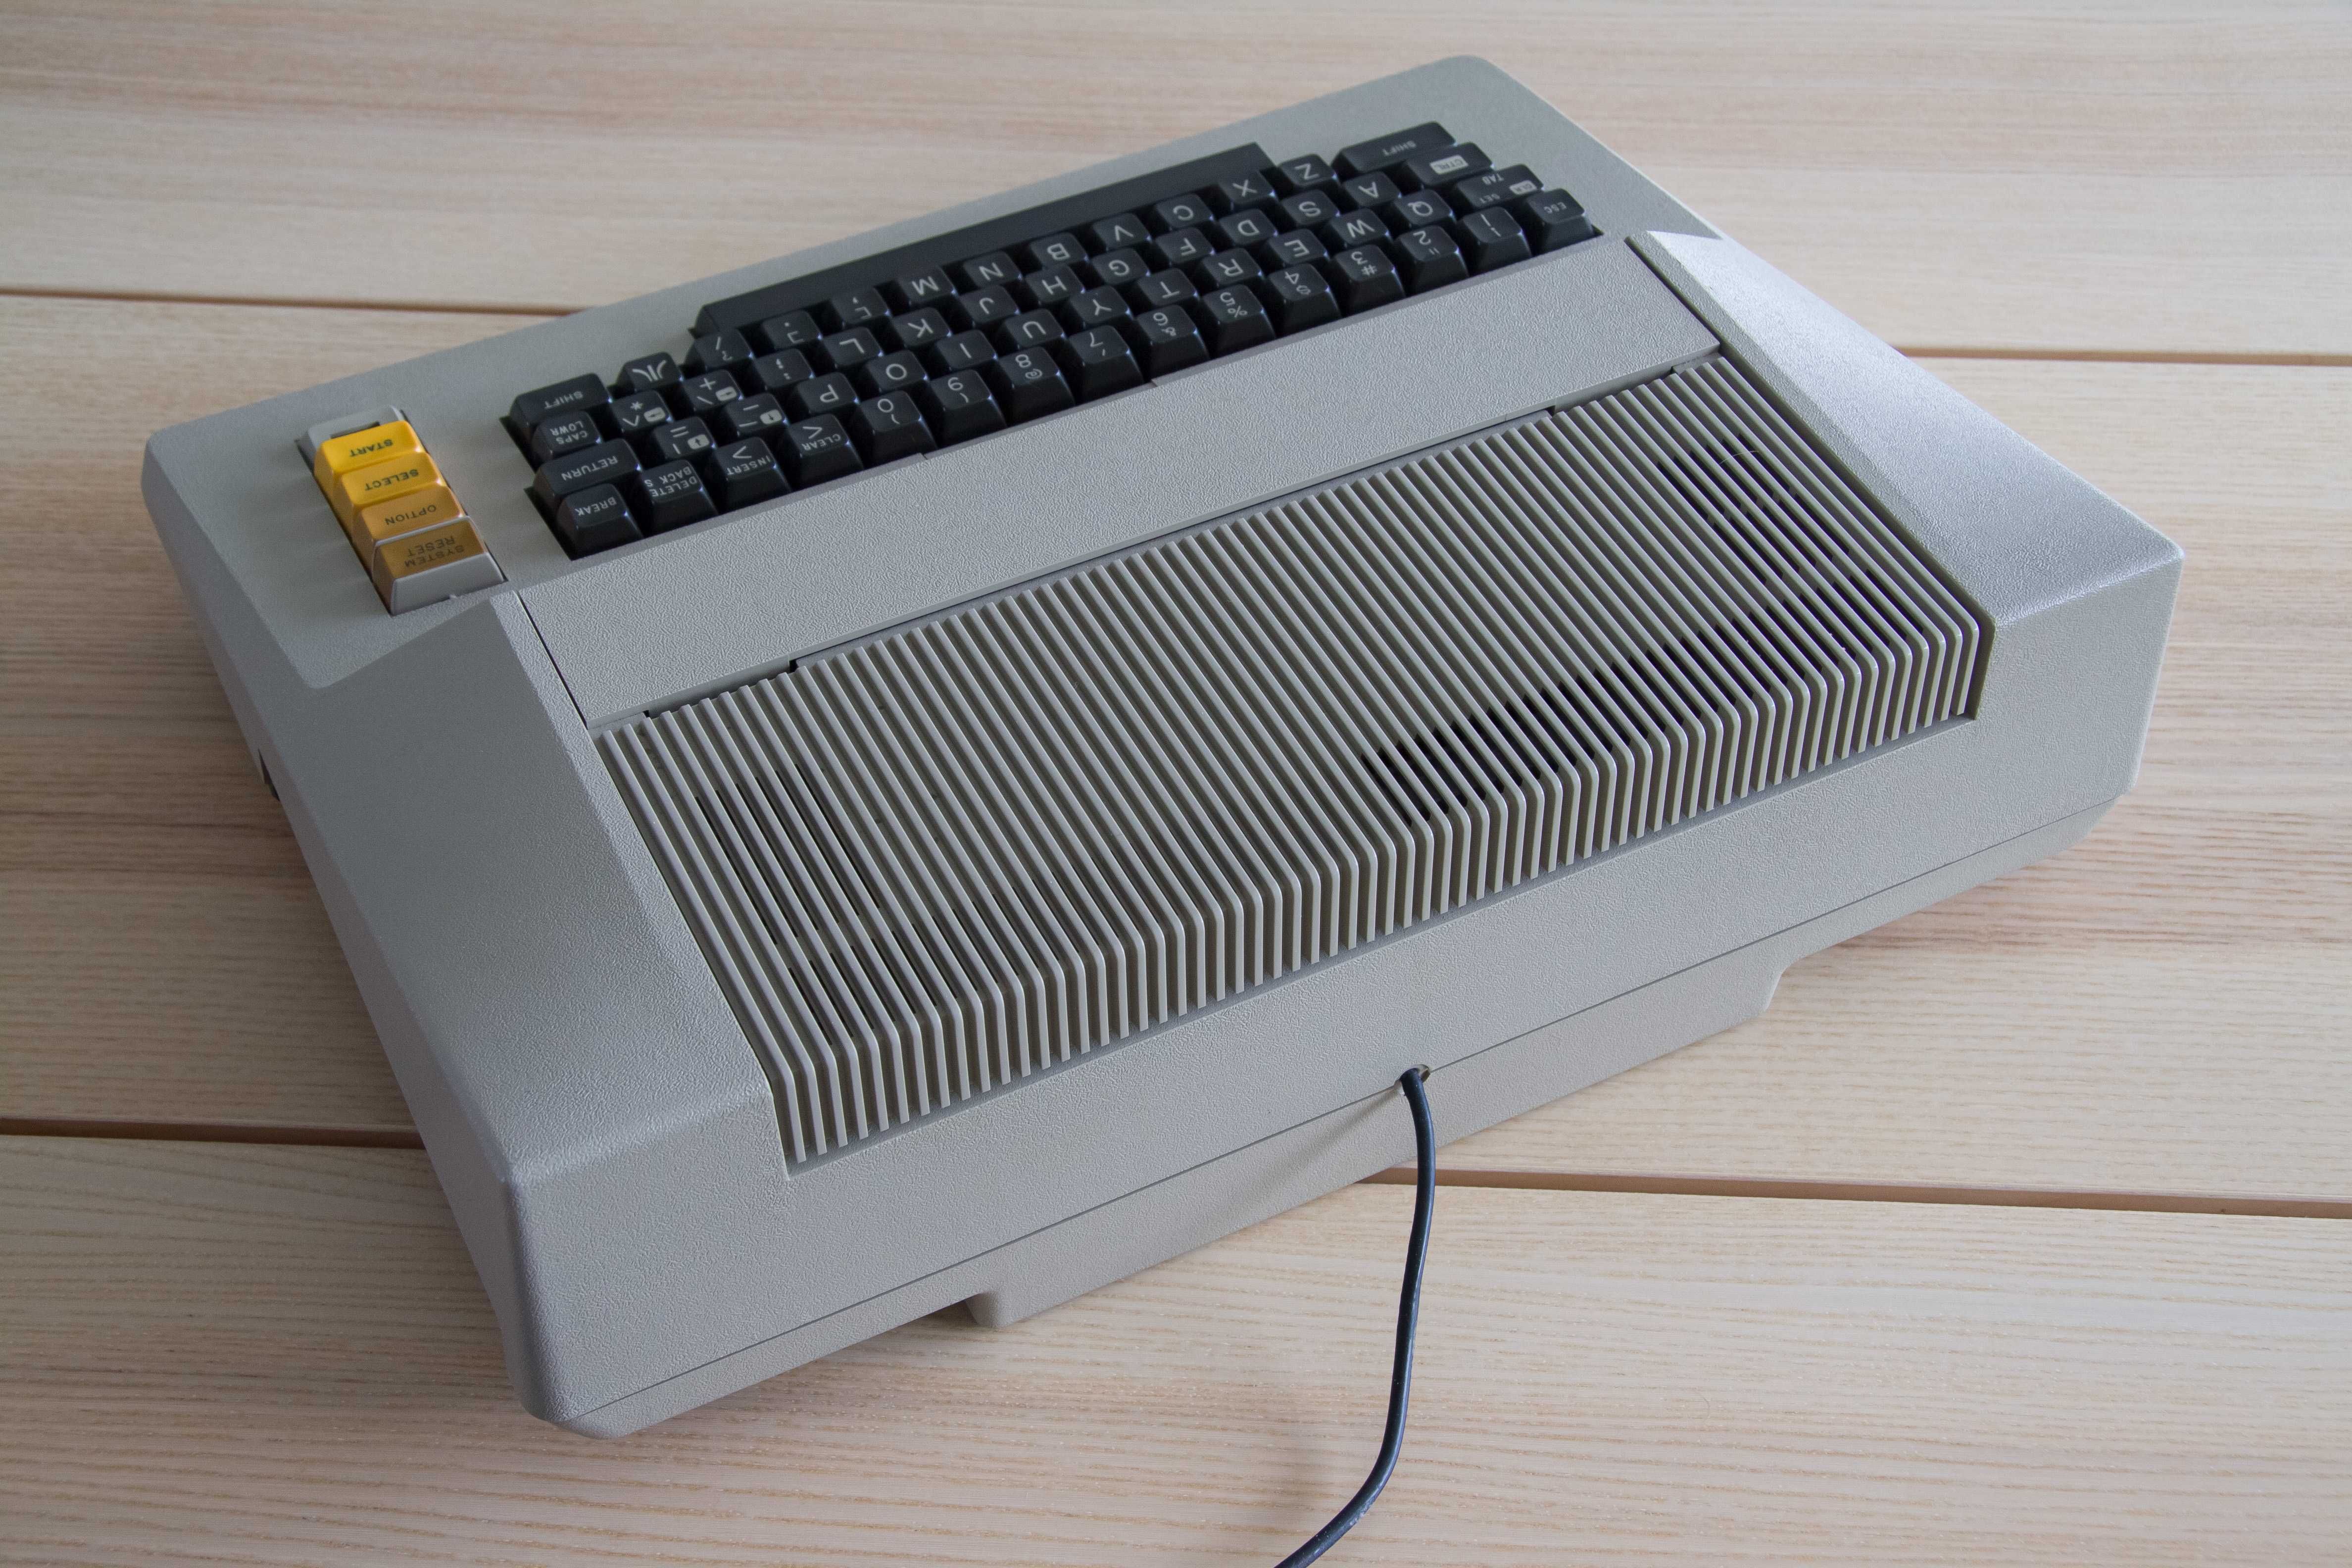 Komputer Atari 800 jak 600XL/800XL/1200XL 8bit